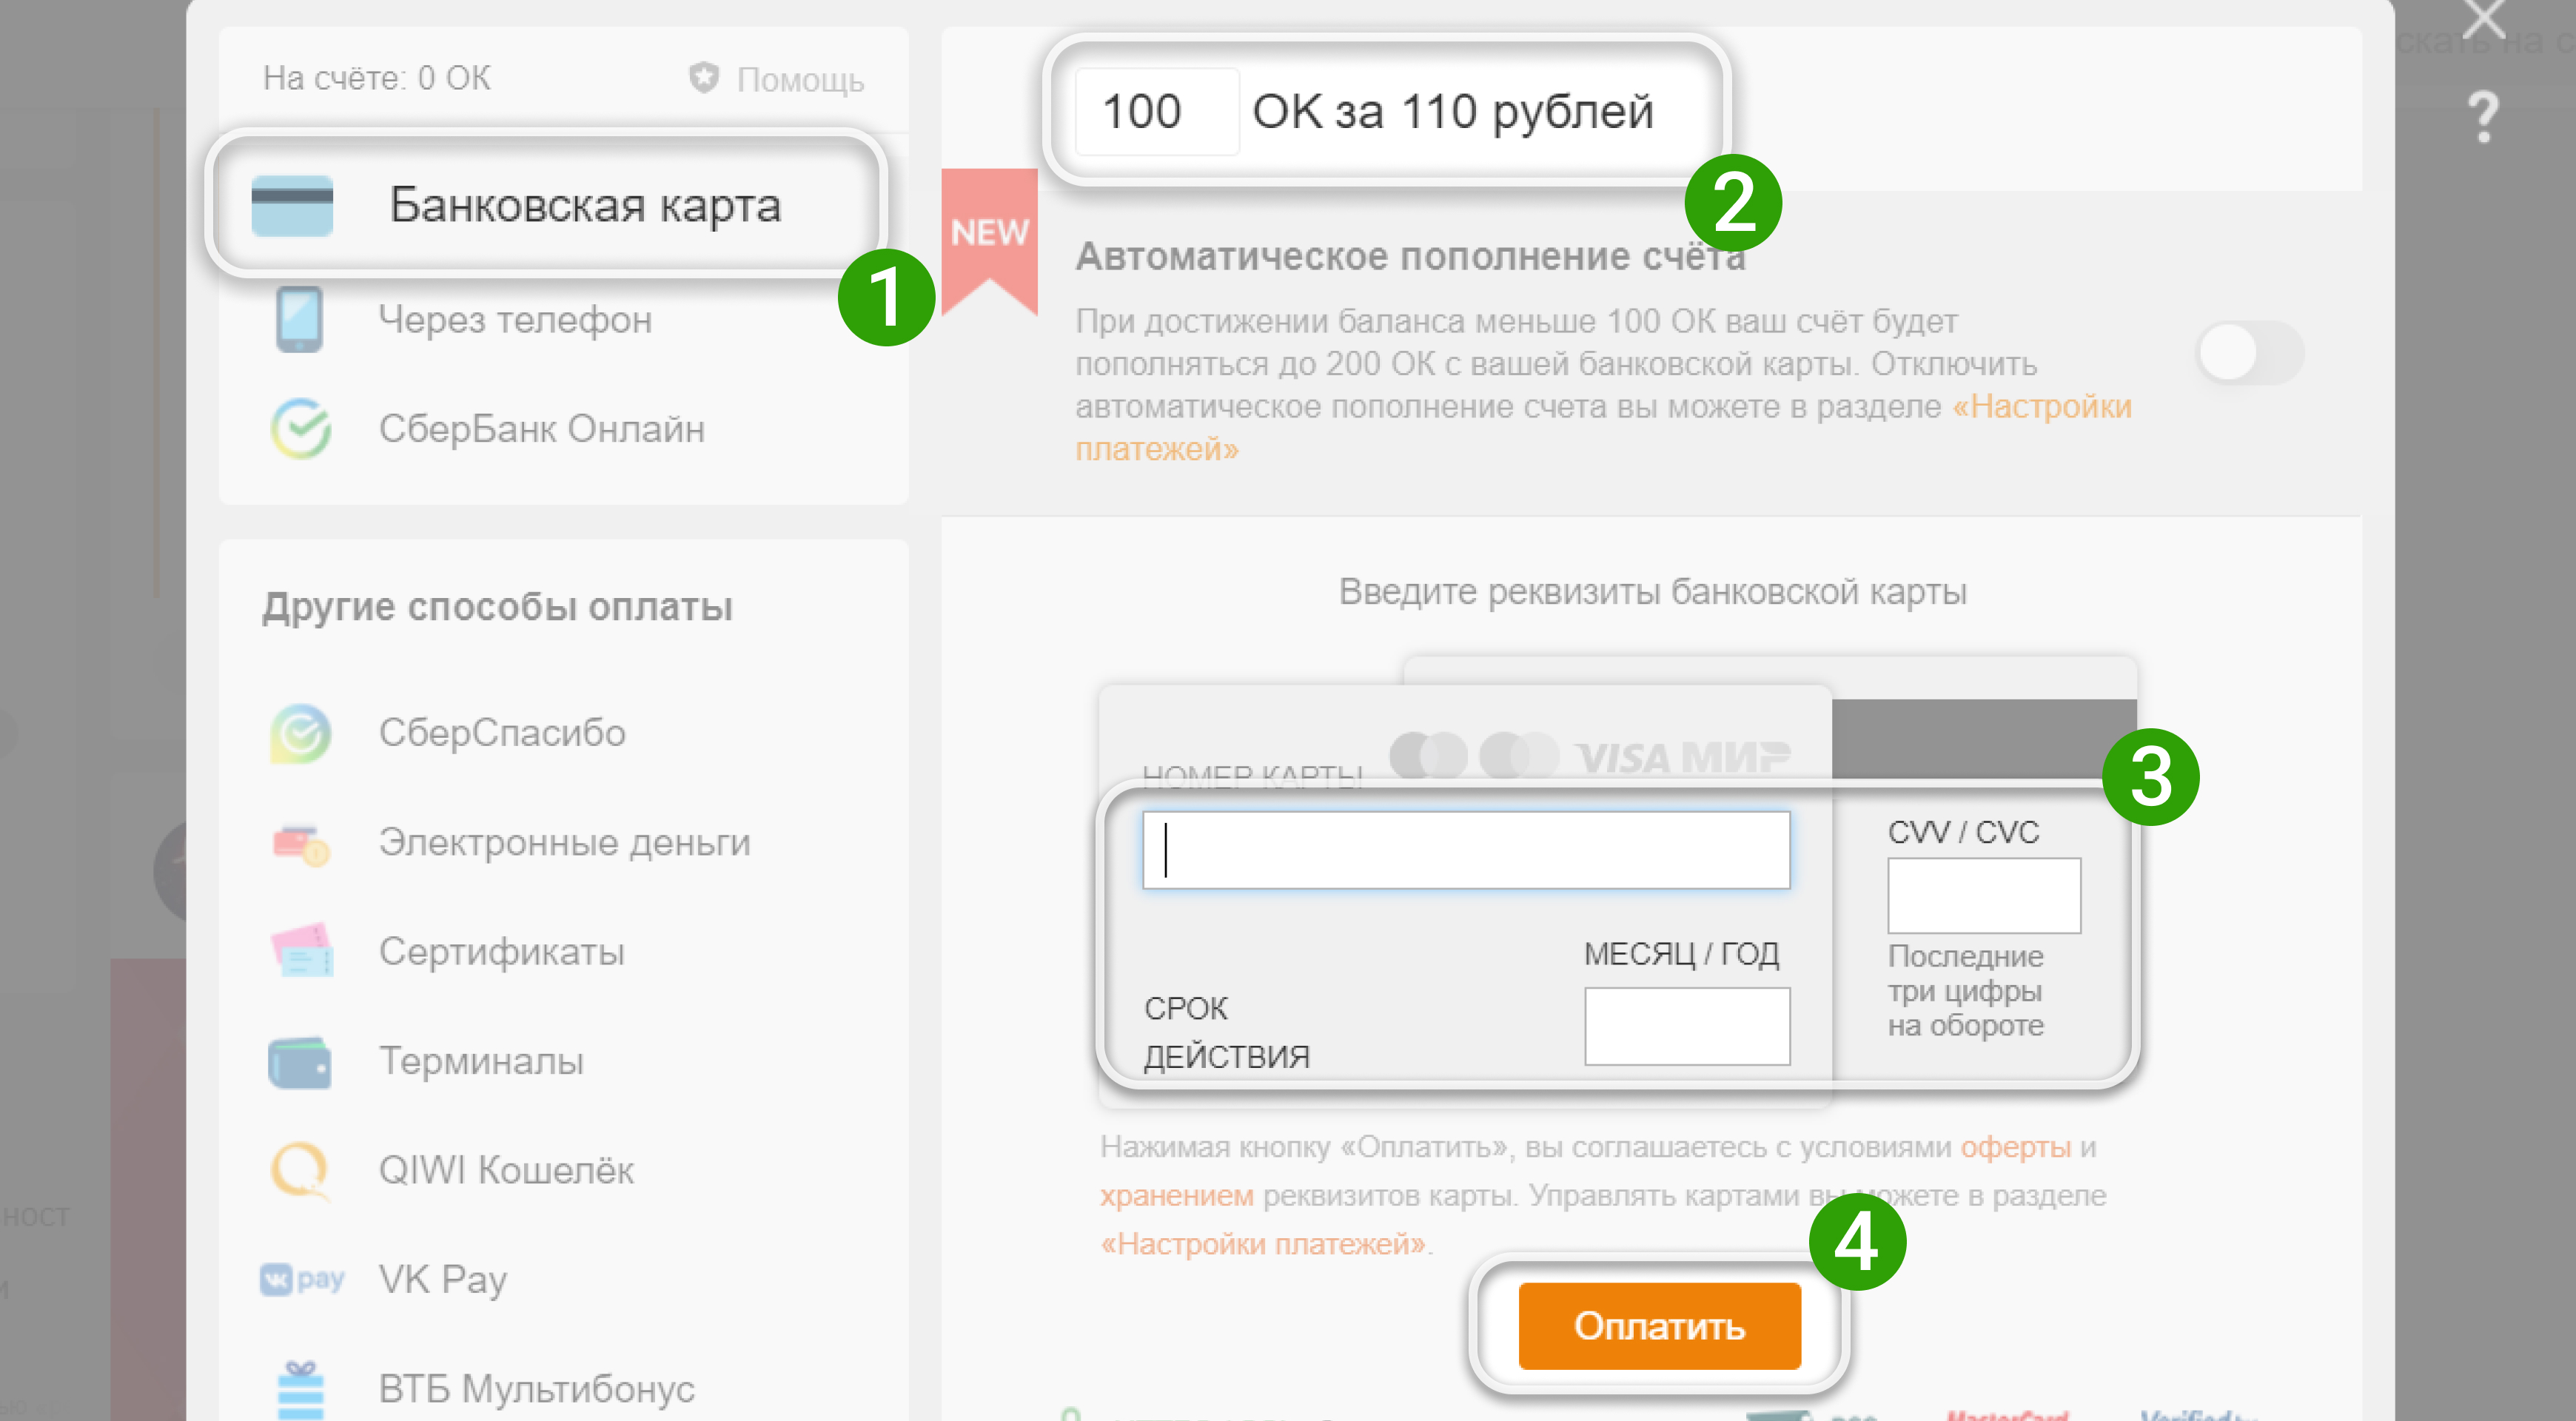 Как добавить видео в Одноклассниках? | FAQ about OK